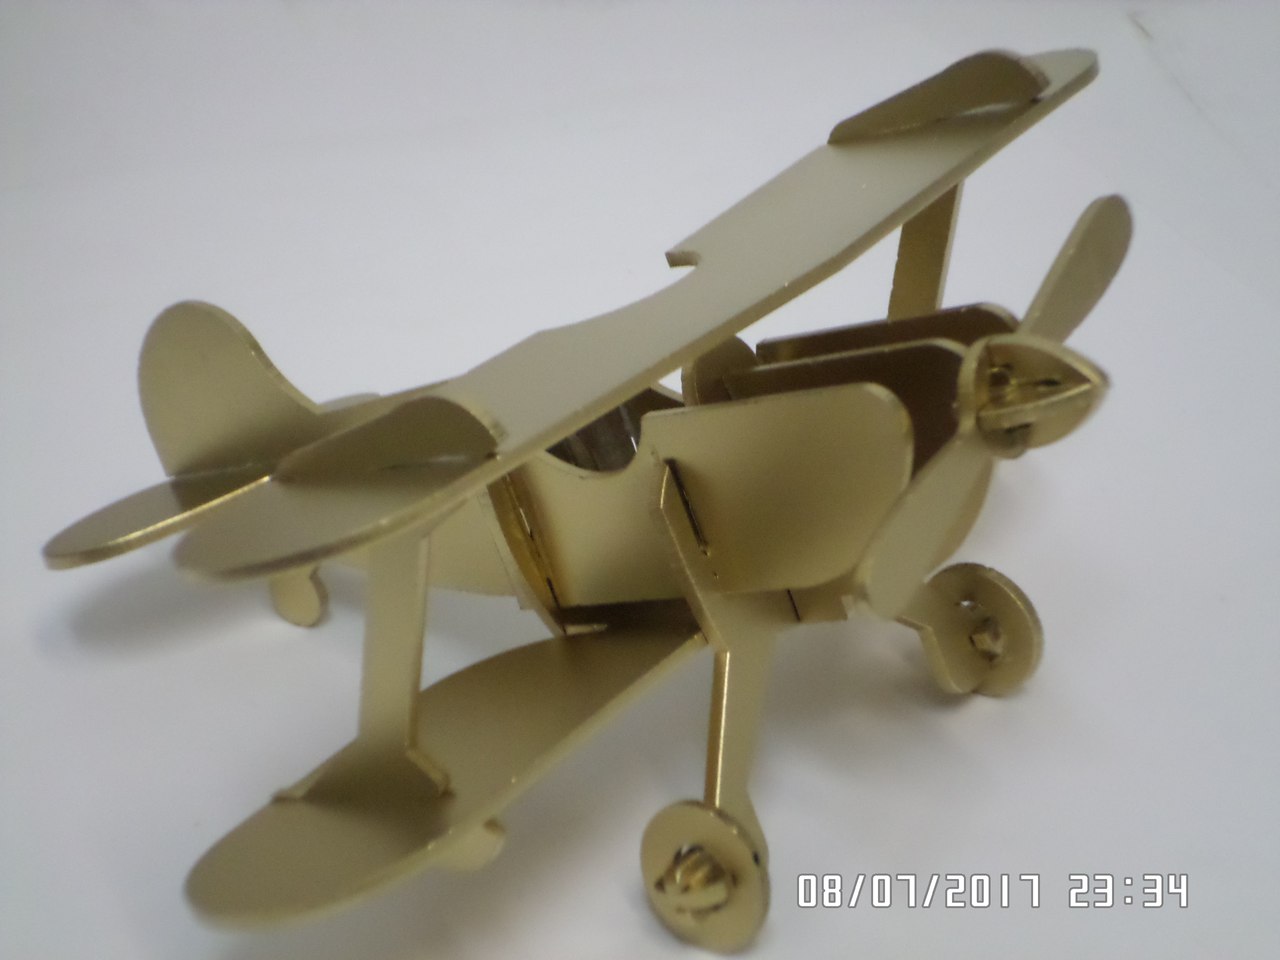 Lazer Kesim Vintage Retro Uçak Çift Kanatlı Uçak Uçak Modeli